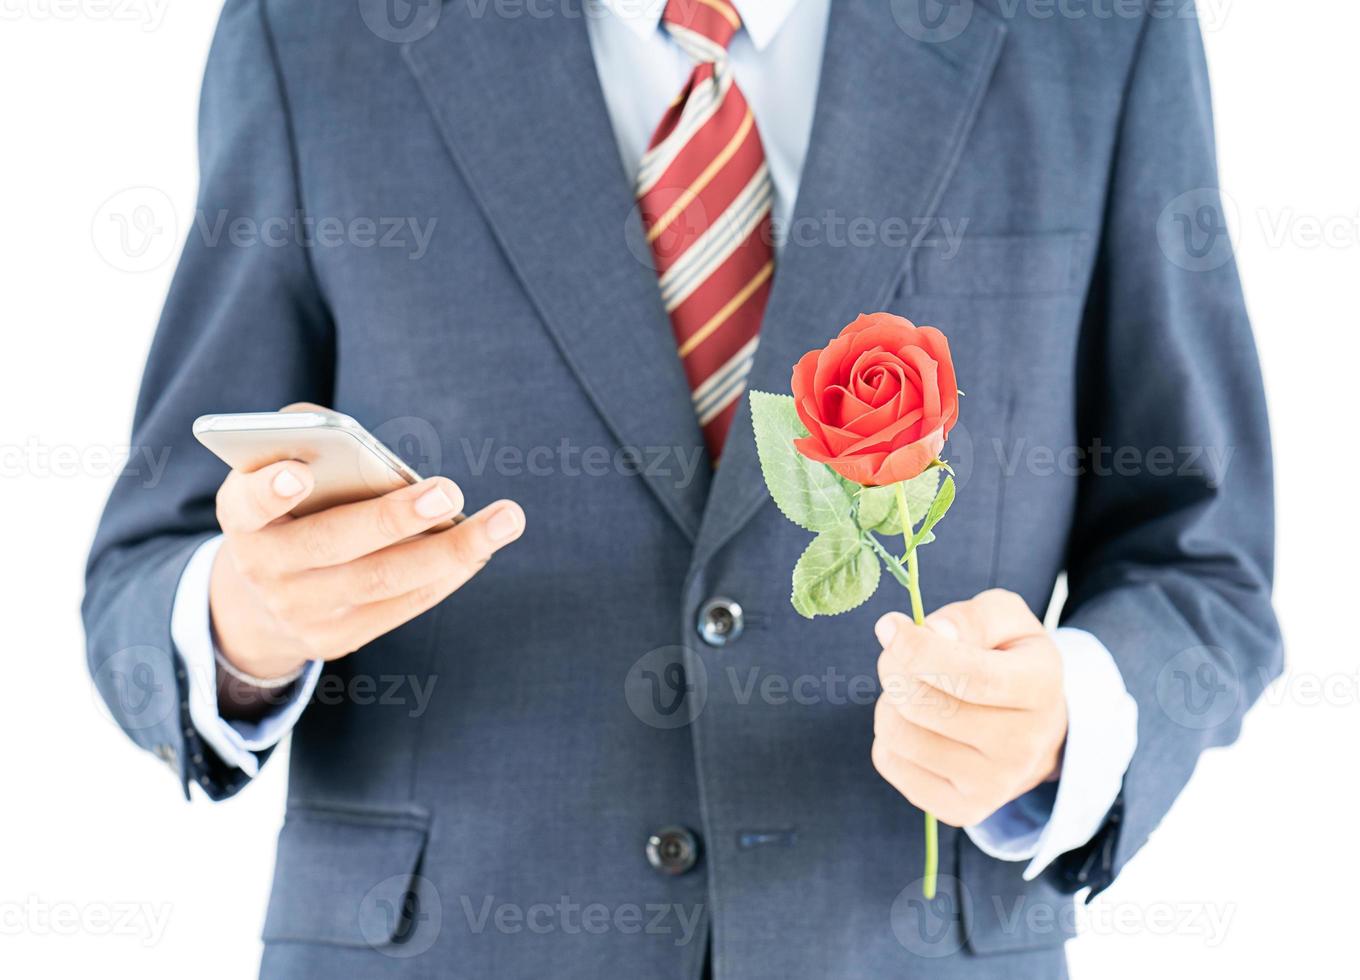 homme d'affaires en costume tenant un smartphone et une rose rouge photo